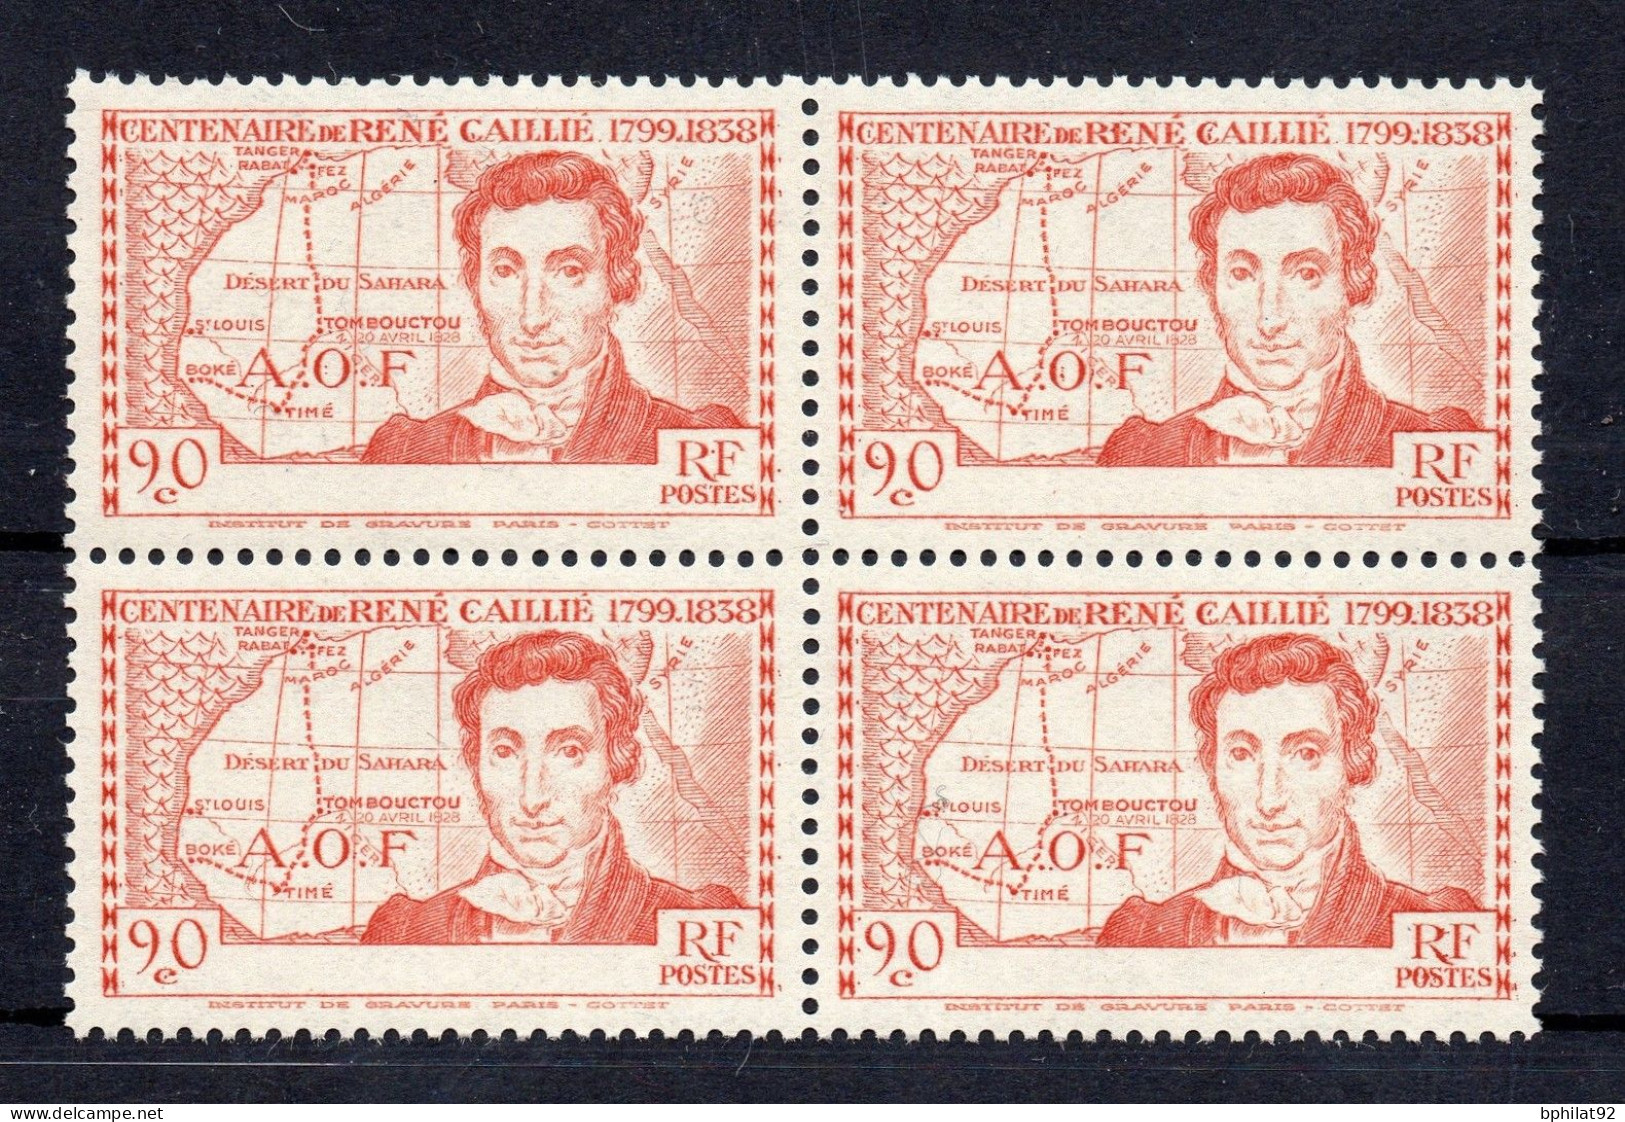 !!! COTE D'IVOIRE BLOC DE 4 DU N°141a 90C RENE CAILLE SANS LEGENDE DE PAYS NEUF ** - Unused Stamps